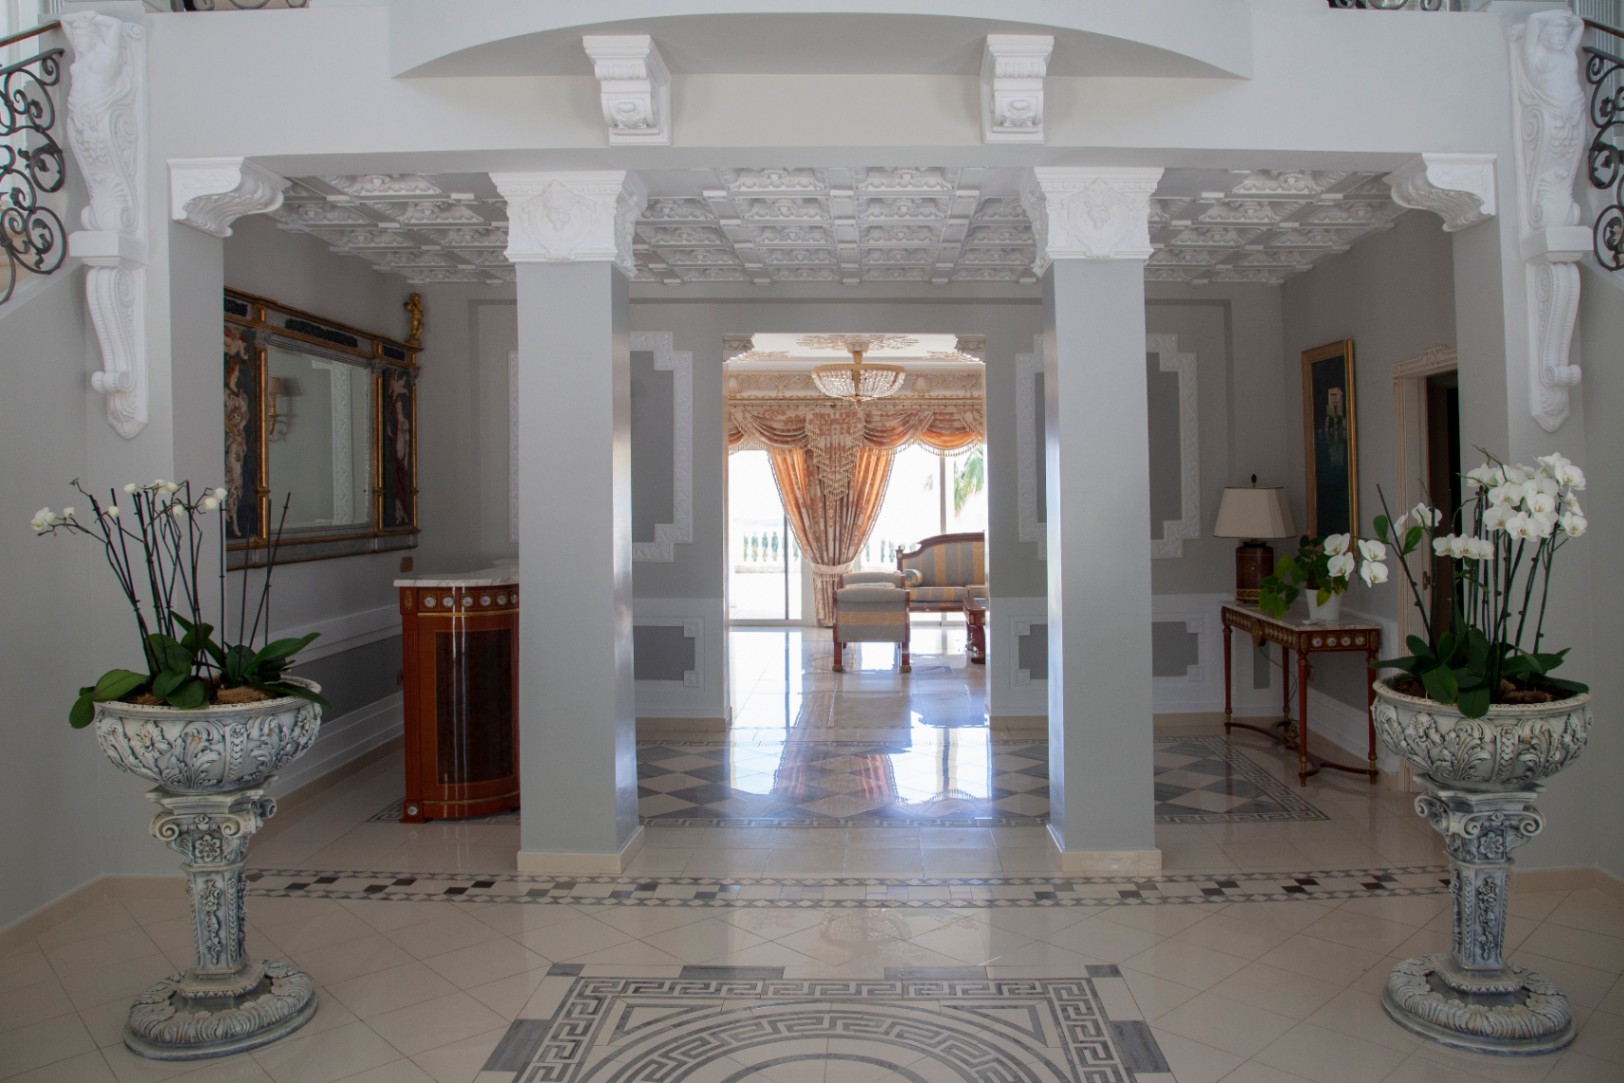 Продается изысканный комплекс, состоящий из двух величественных вилл, в живописном городке Альтеа, оазисе спокойствия на великолепном побережье Коста Бланка, всего в 60 км от аэропорта Аликанте